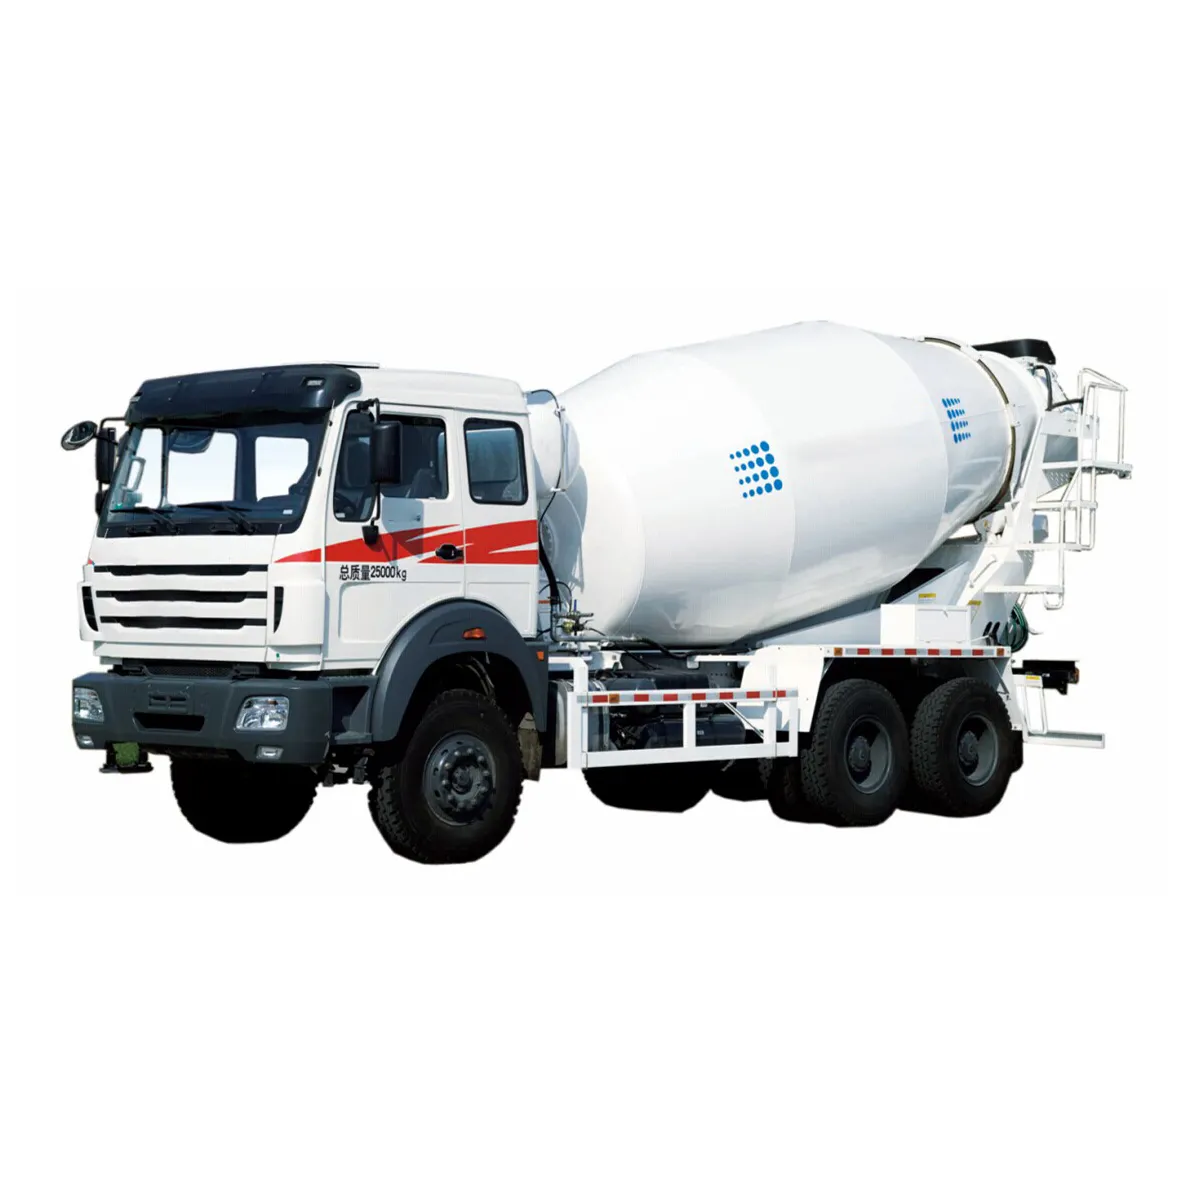 Iyi durumda sıcak satış 8m 3 beton mikser kamyonu SY308C-6W